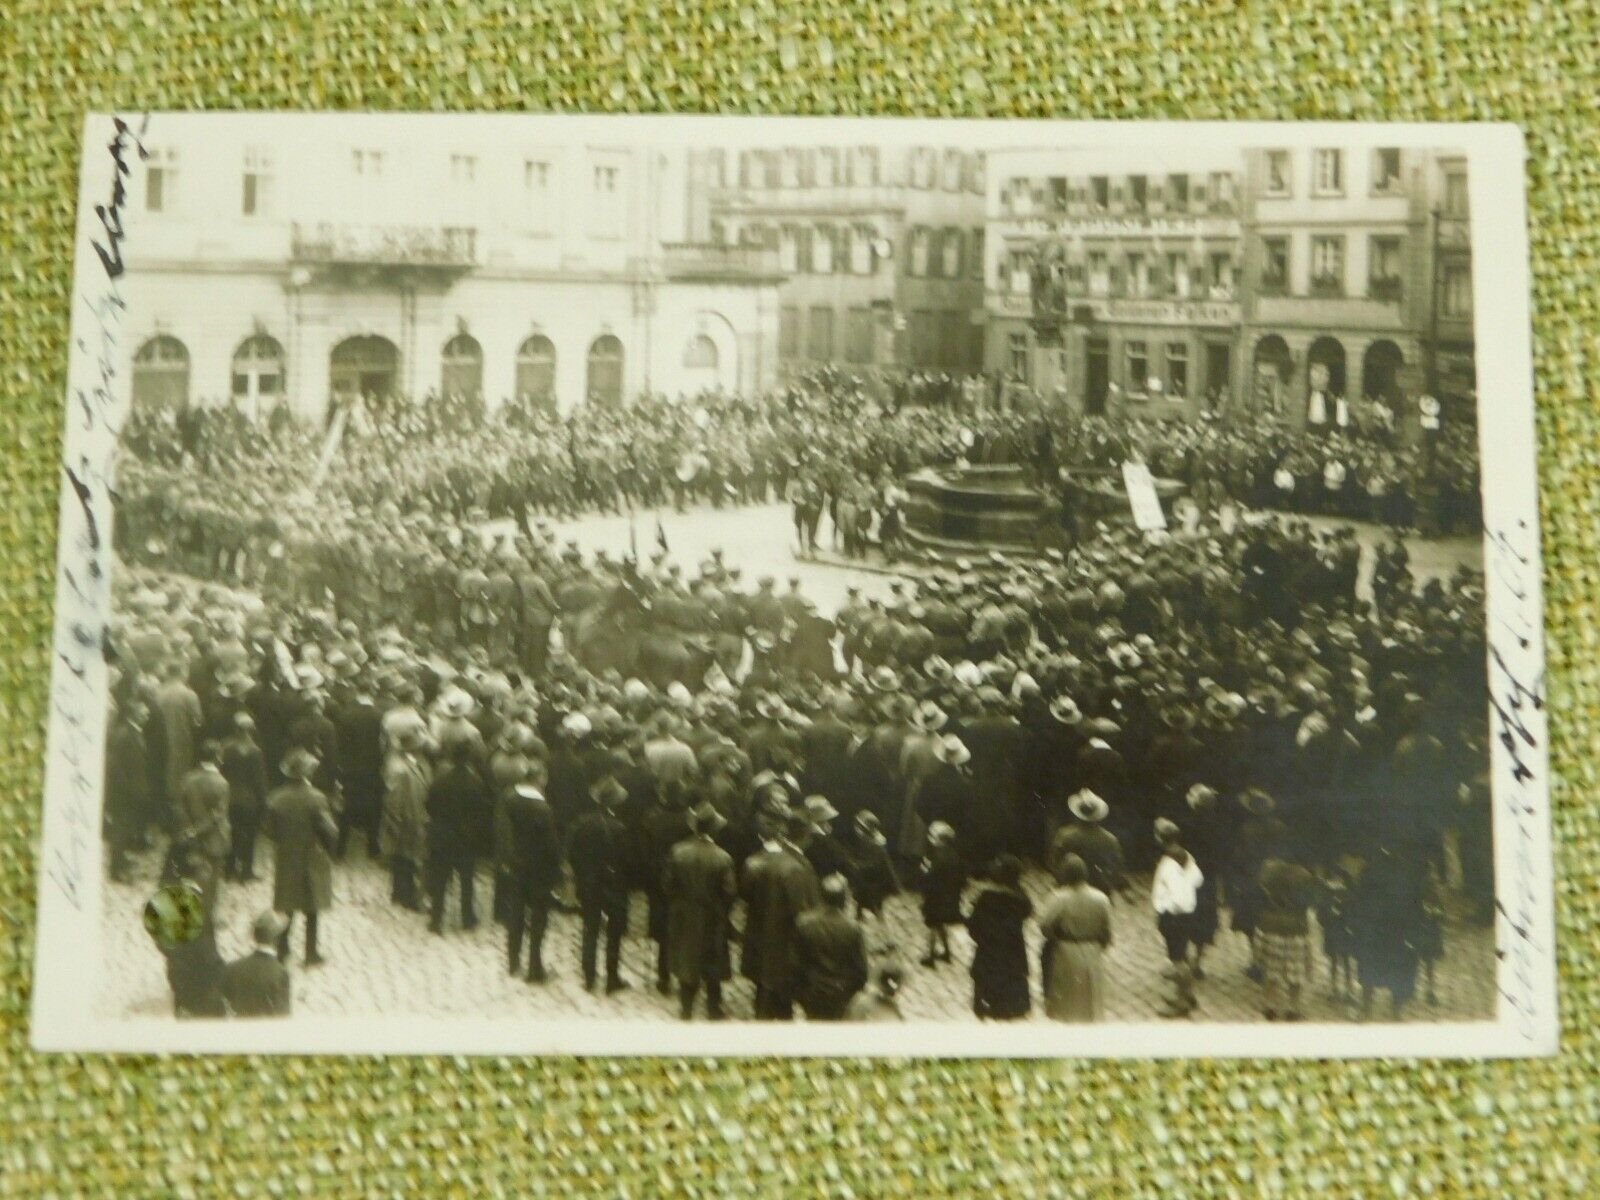 1931 Heidelberg Postcard Meeting on the Marketplace